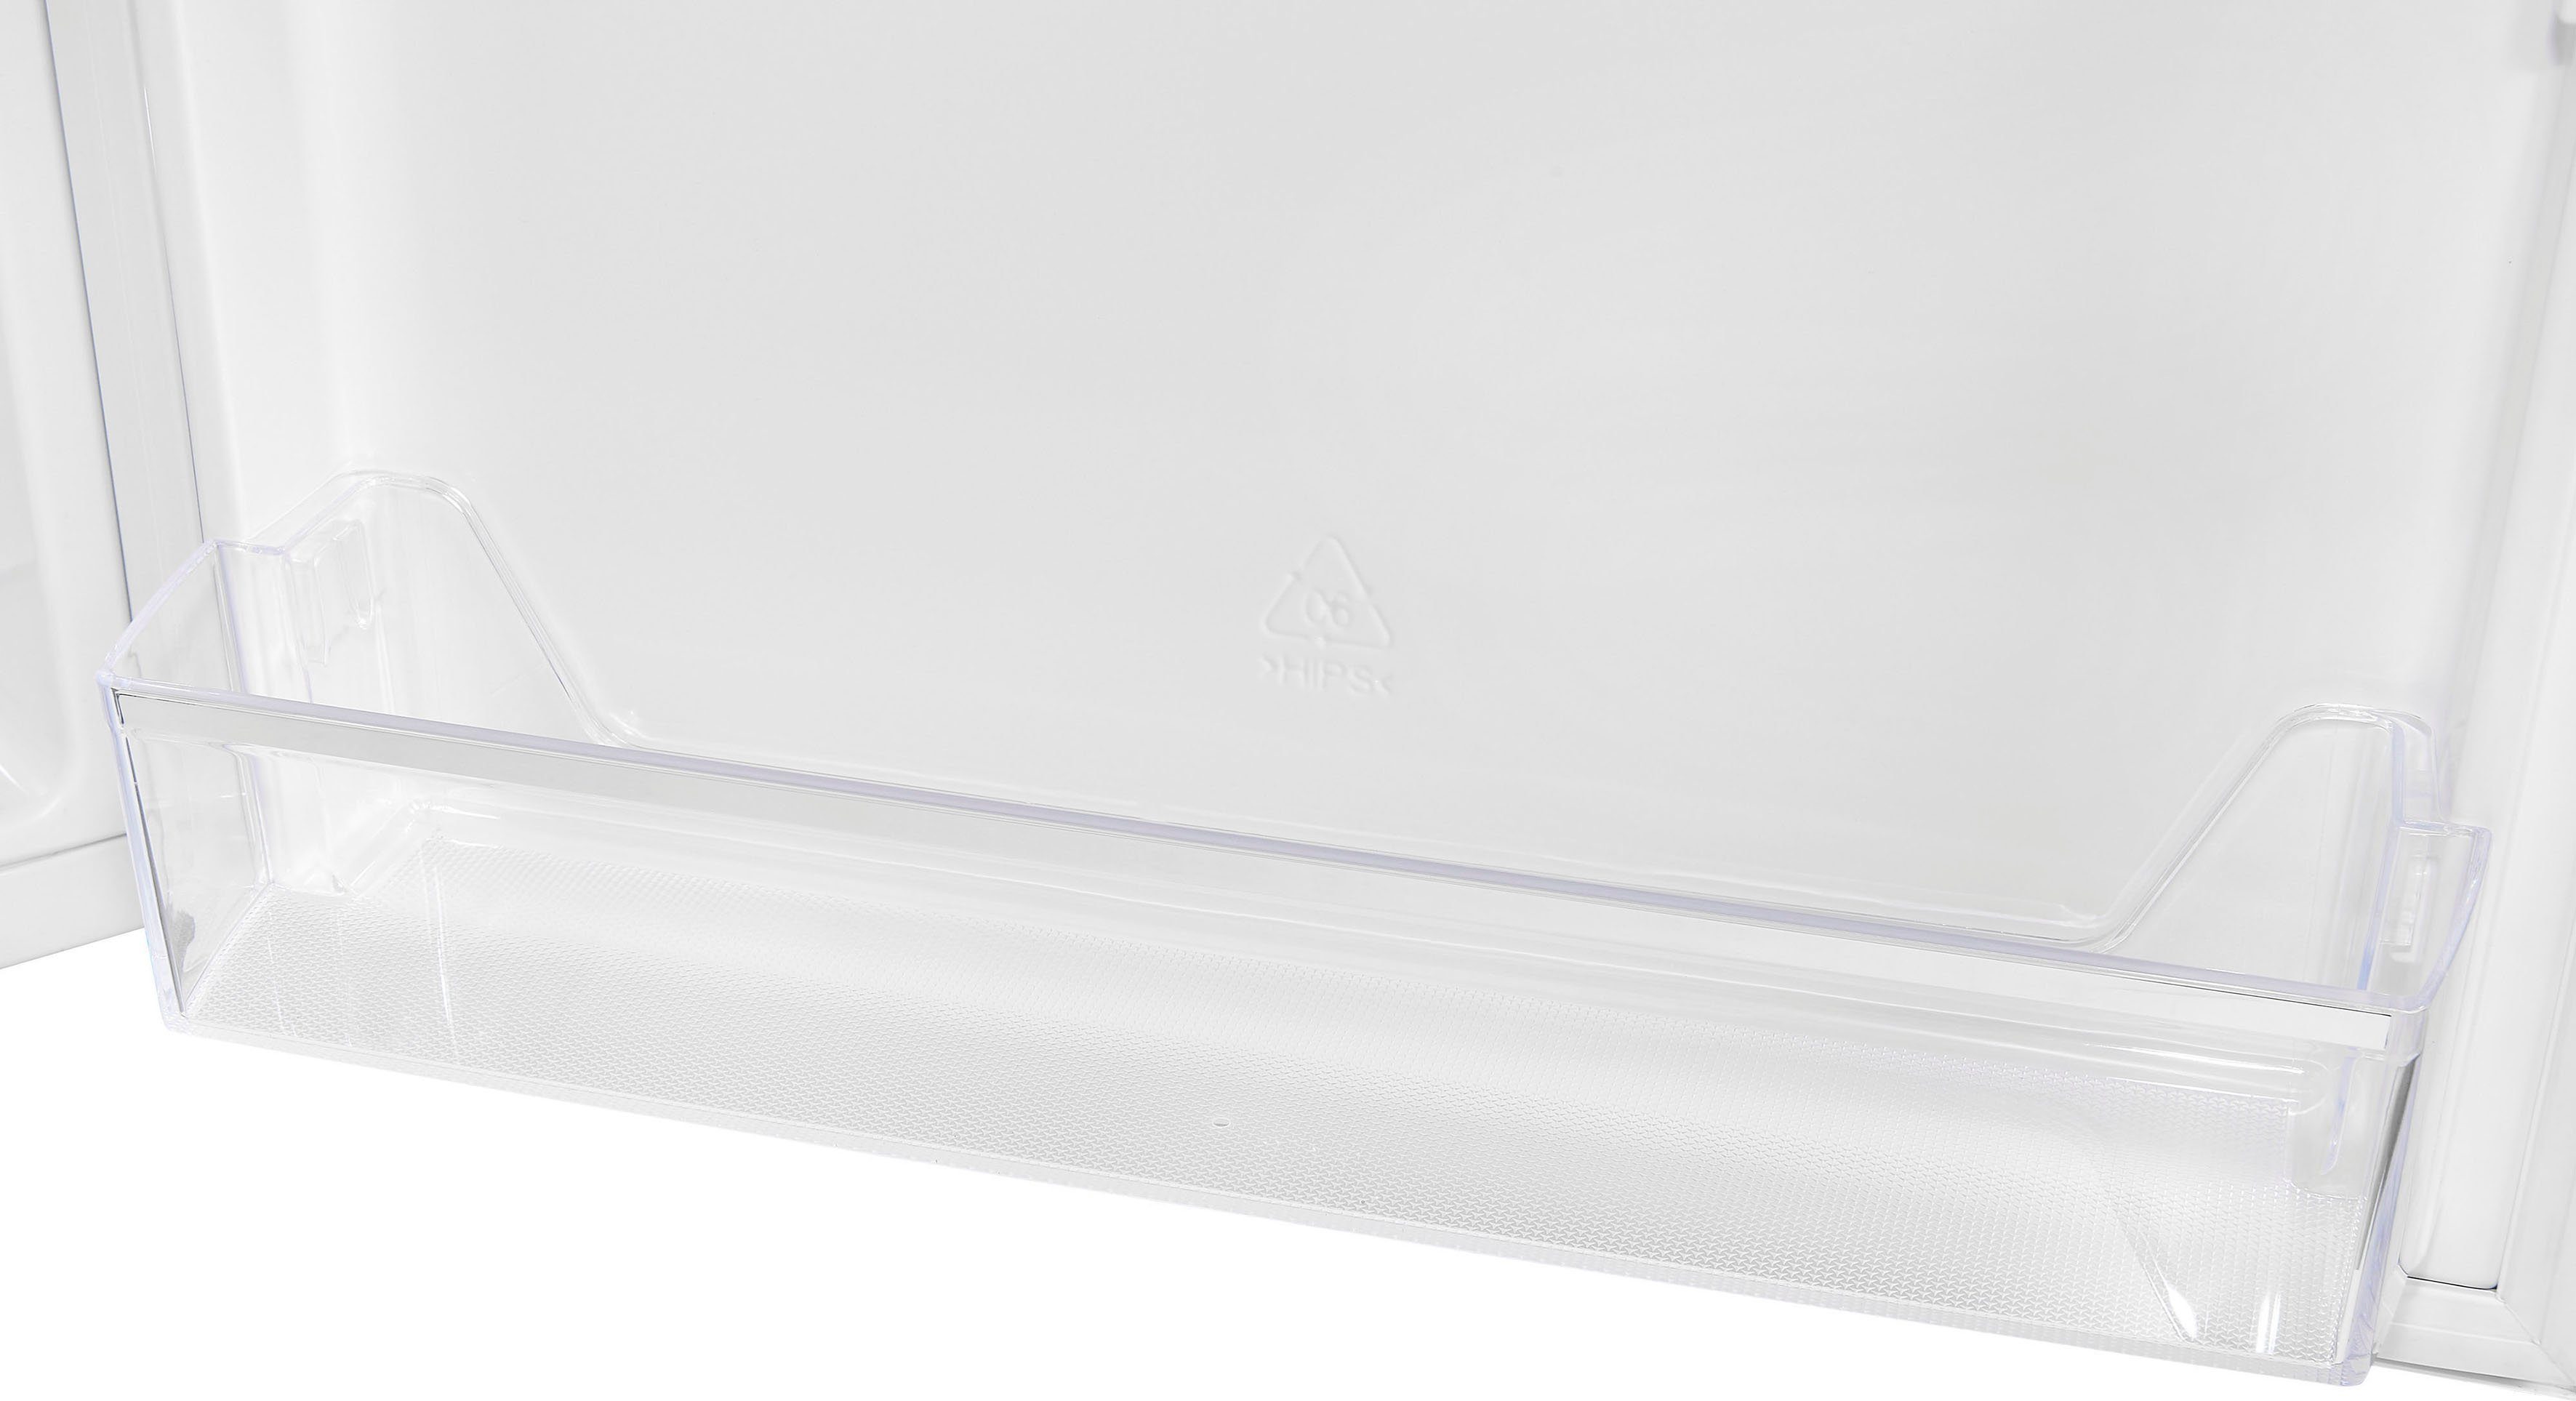 exquisit Kühlschrank 85,0 KS18-4-H-170E 60,0 weiss, cm cm breit hoch, weiß